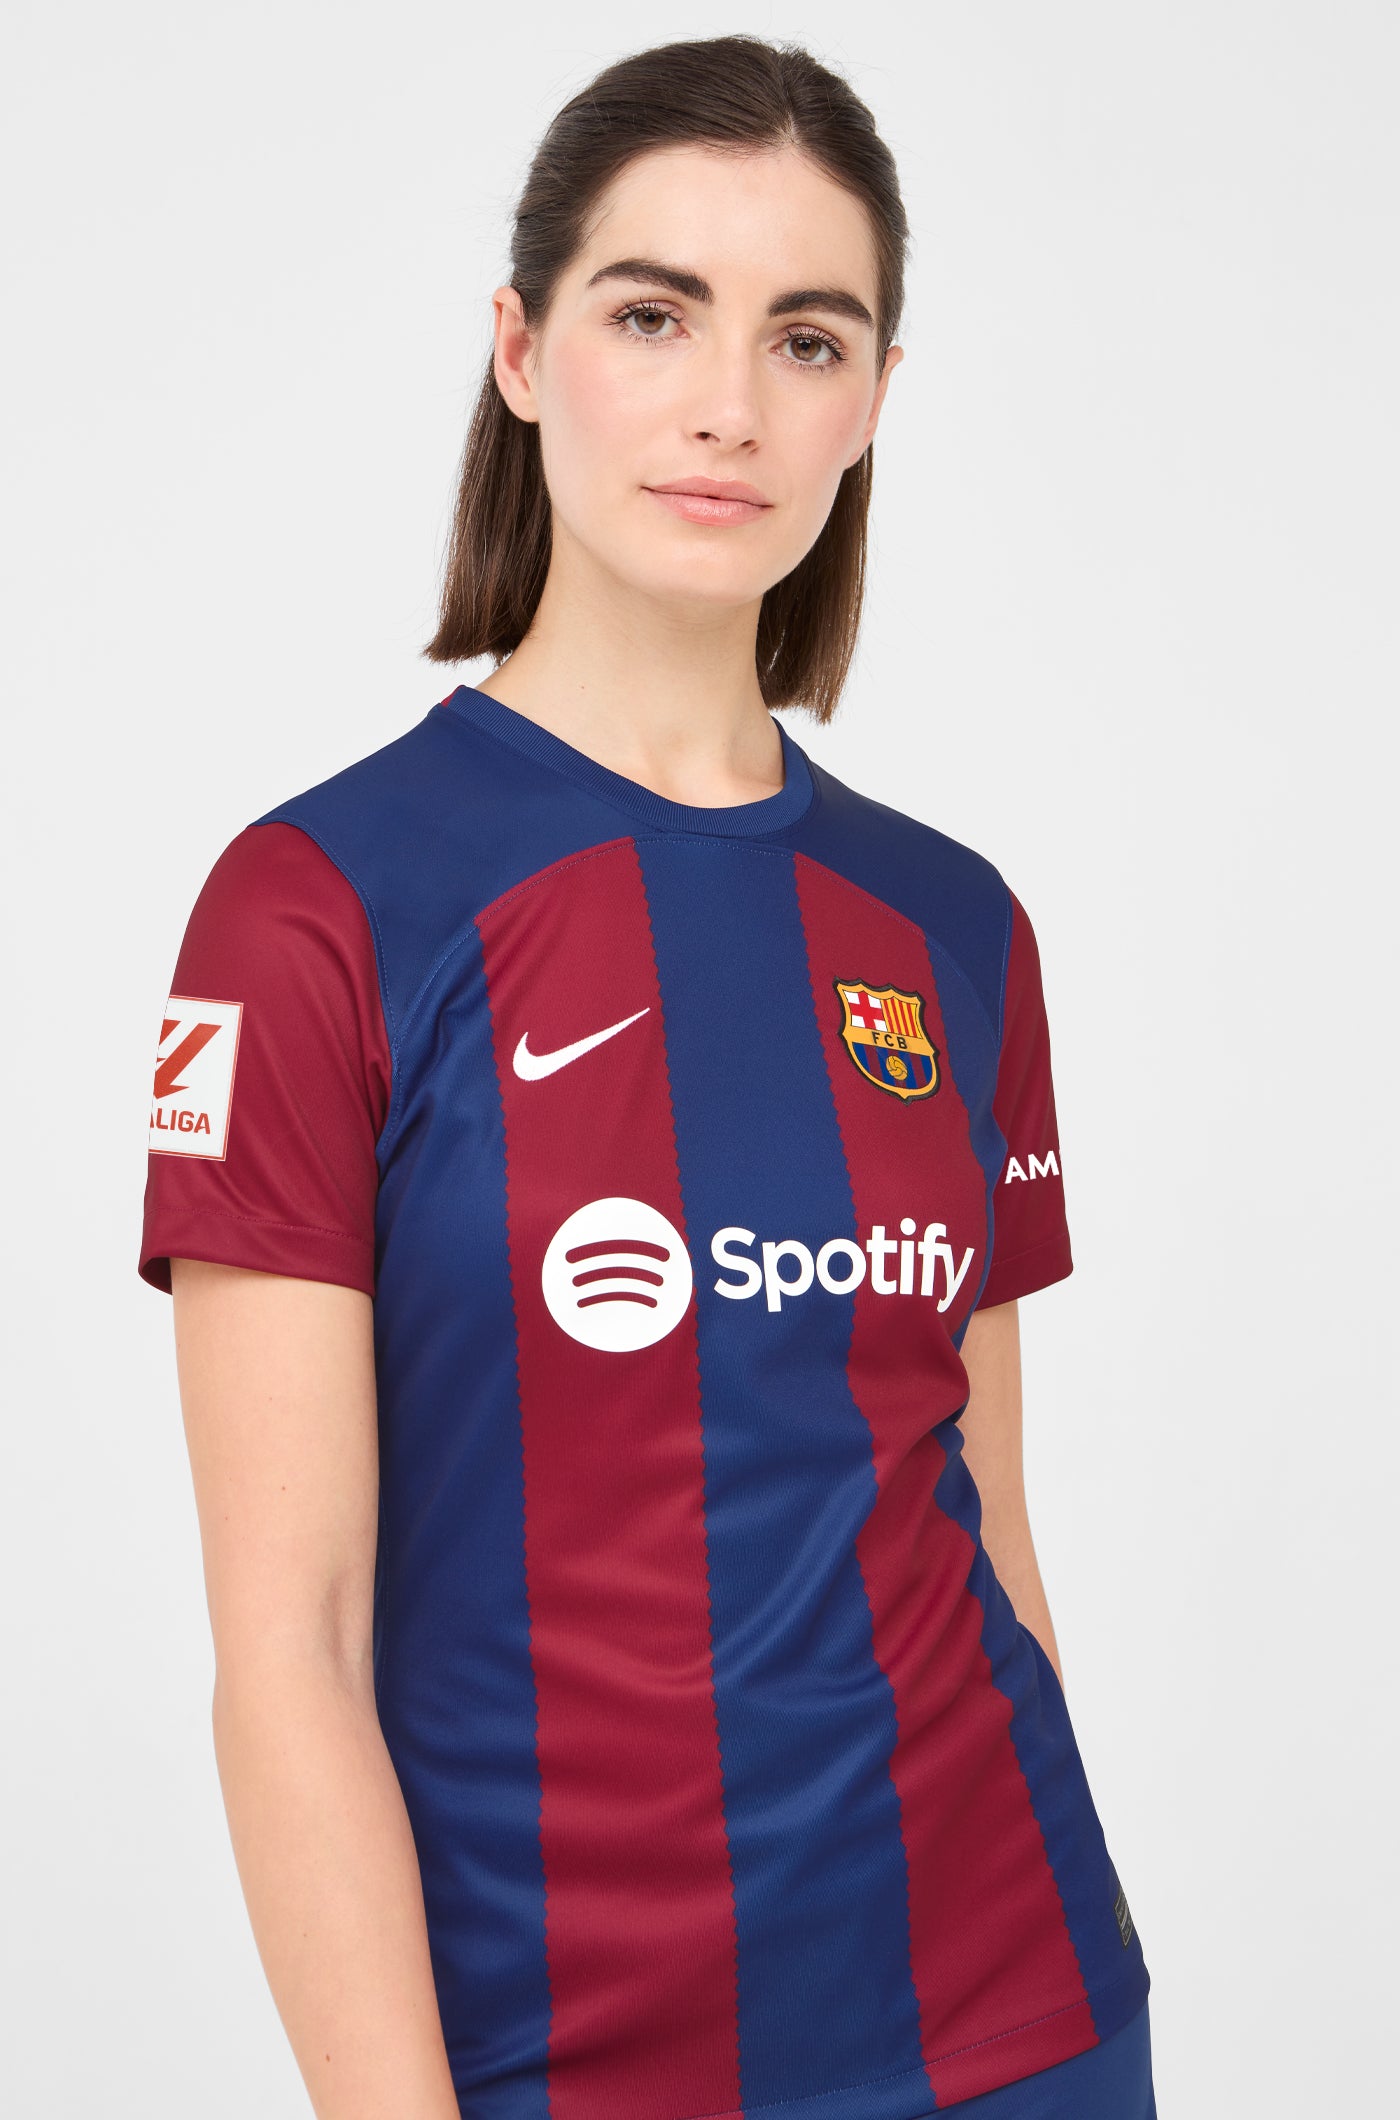 LFP Camiseta primera equipación FC Barcelona 23/24 - Mujer - R. ARAUJO